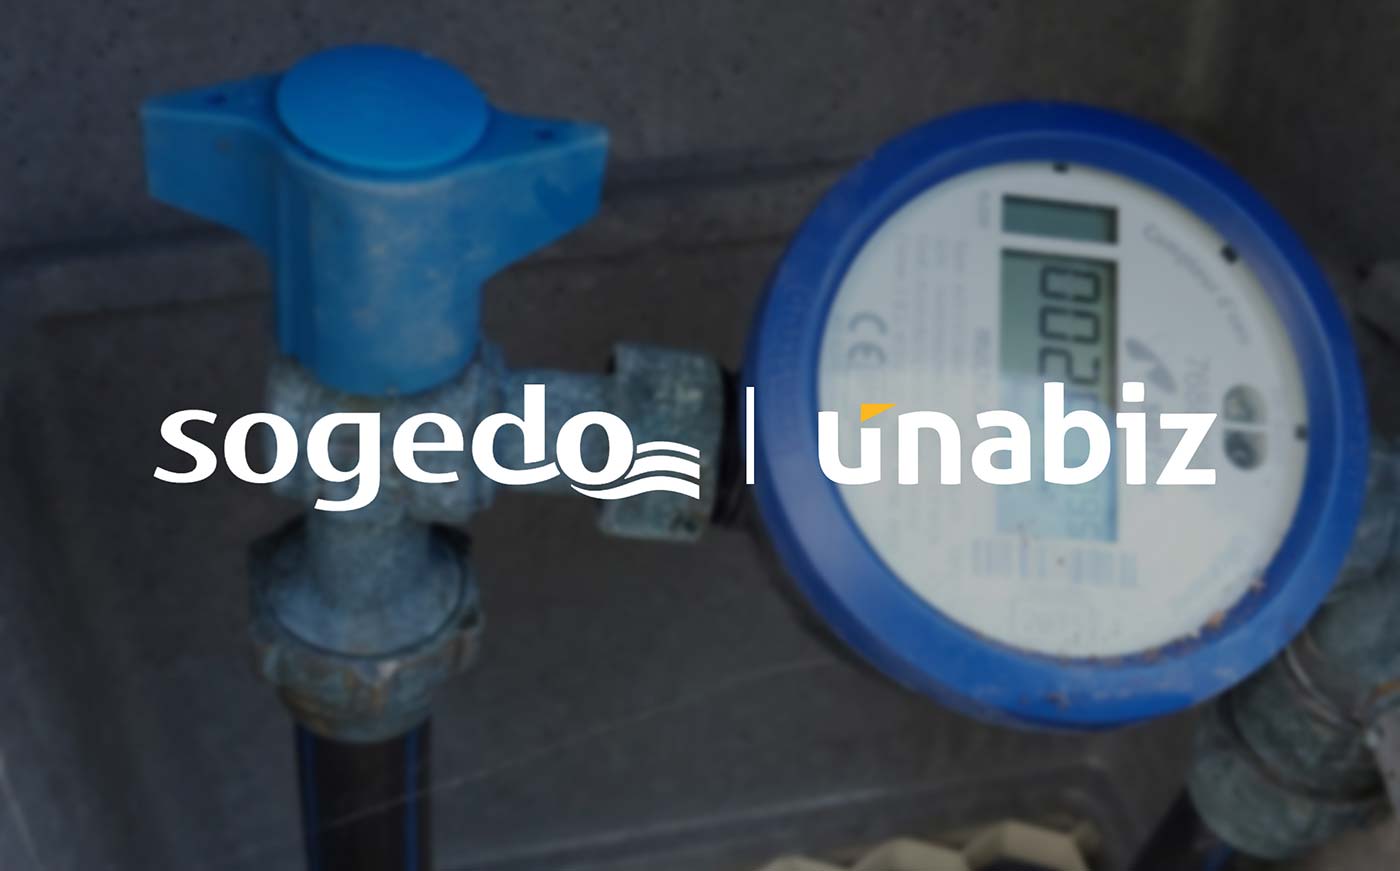 Sogedo Partners UnaBiz for Smart Water Metering in France